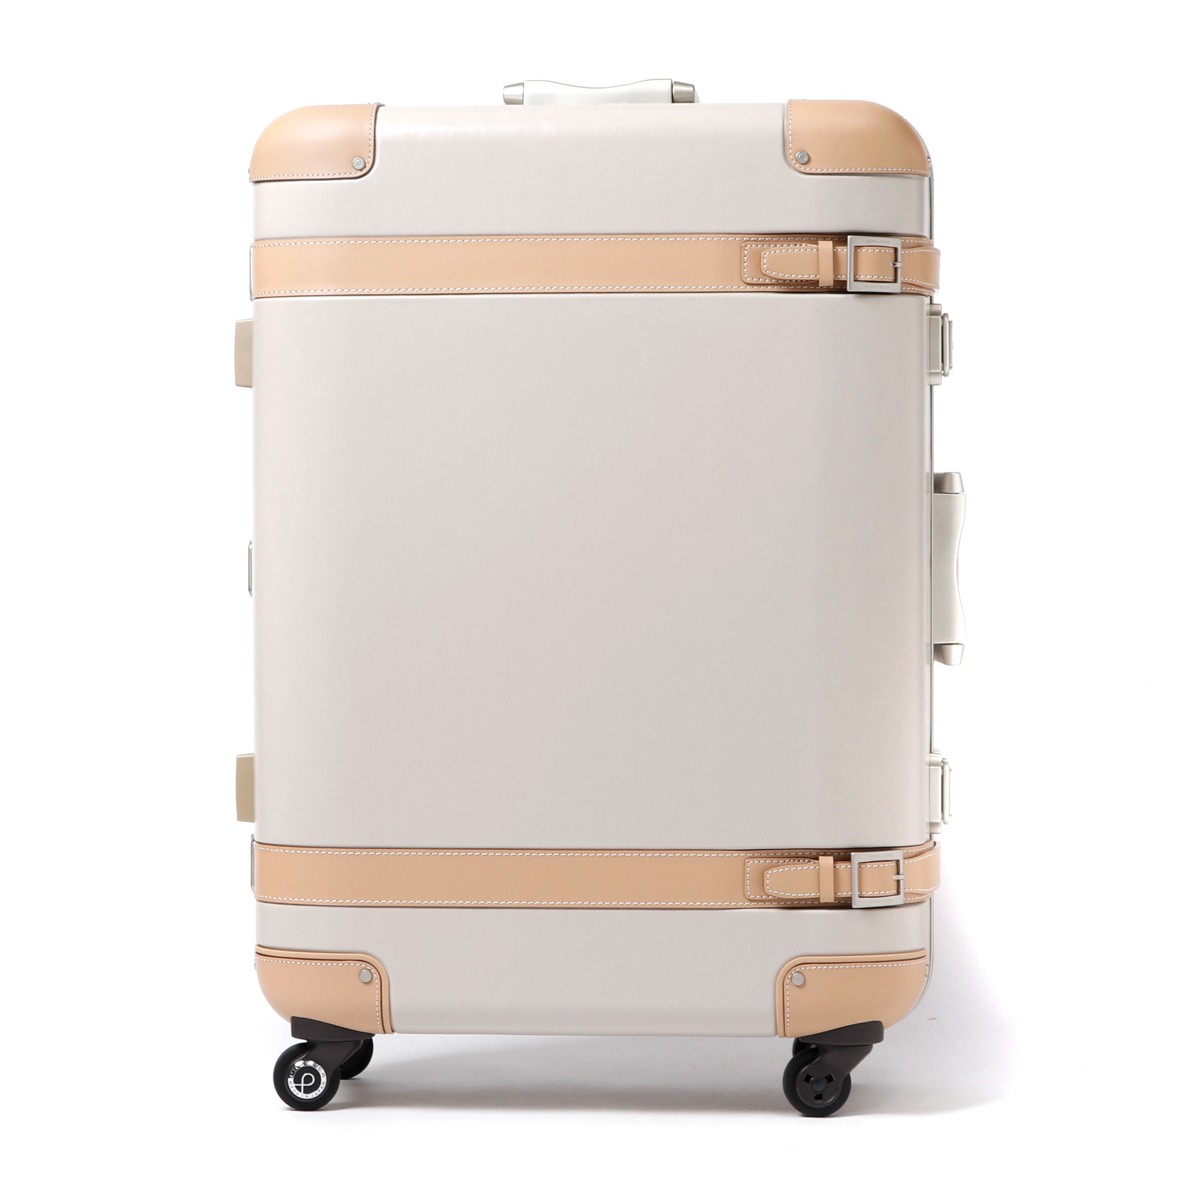 最上の品質な BloomShopプロテカ スーツケース 日本製 コーリー 64L